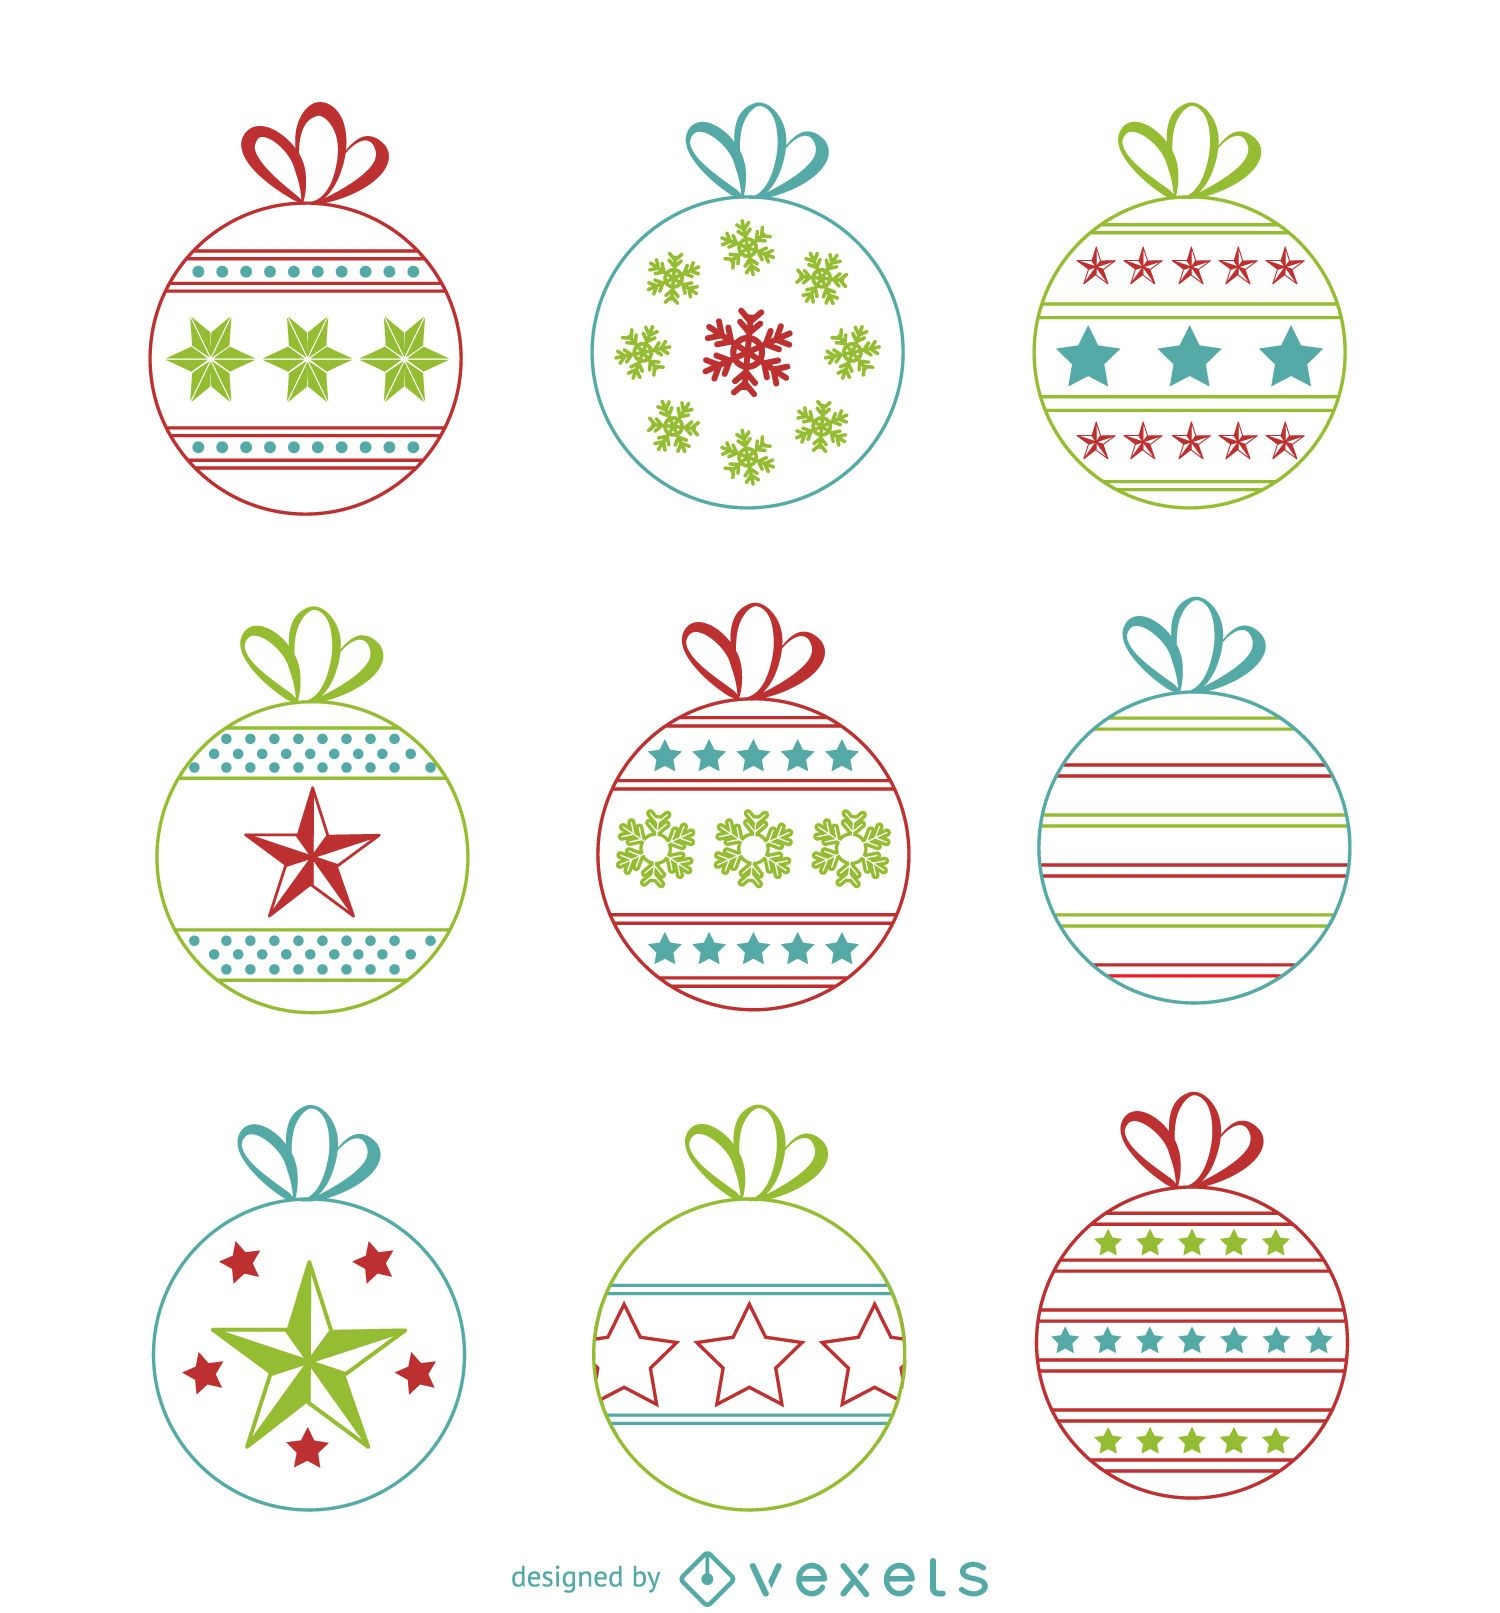 Weihnachtskugeln mit Designs gesetzt